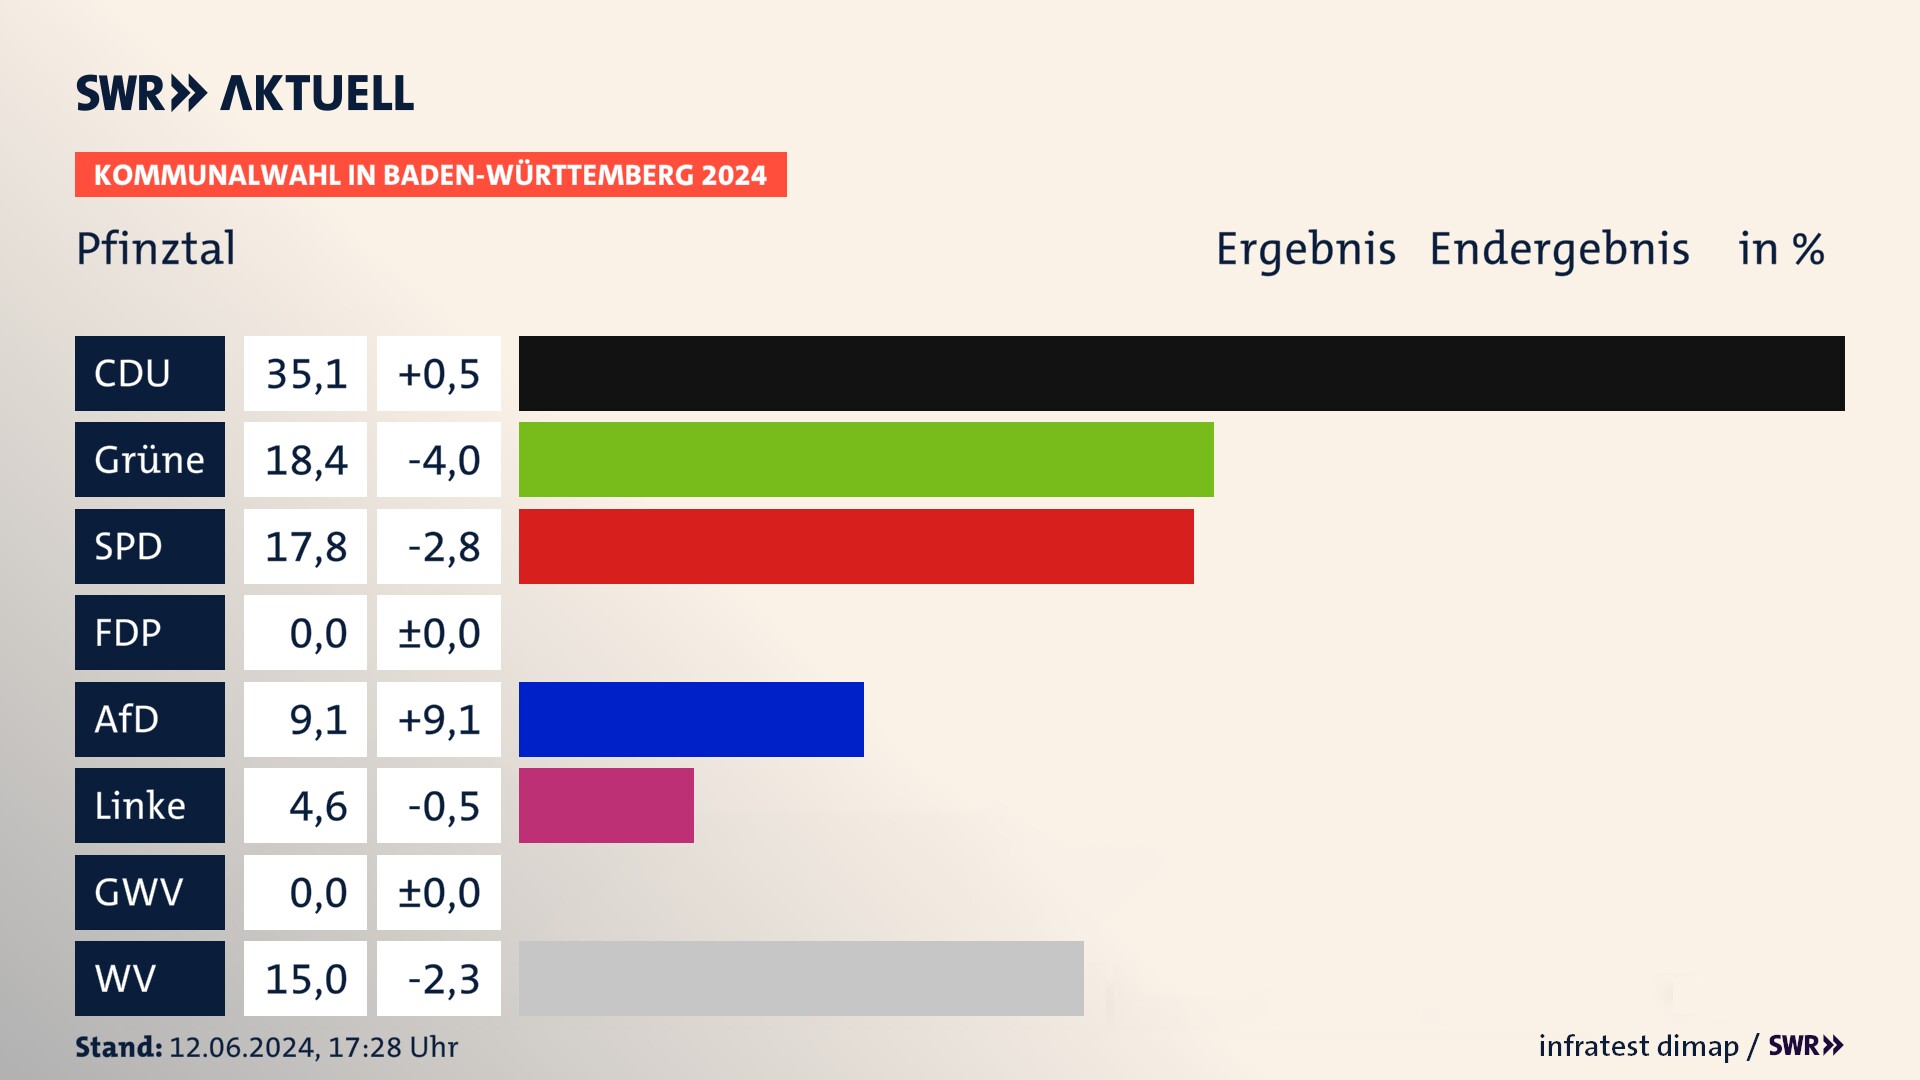 Kommunalwahl 2024 Endergebnis Zweitstimme für Pfinztal. In Pfinztal erzielt die CDU 35,1 Prozent der gültigen  Stimmen. Die Grünen landen bei 18,4 Prozent. Die SPD erreicht 17,8 Prozent. Die AfD kommt auf 9,1 Prozent. Die Linke landet bei 4,6 Prozent. Die Wählervereinigungen erreichen 15,0 Prozent.